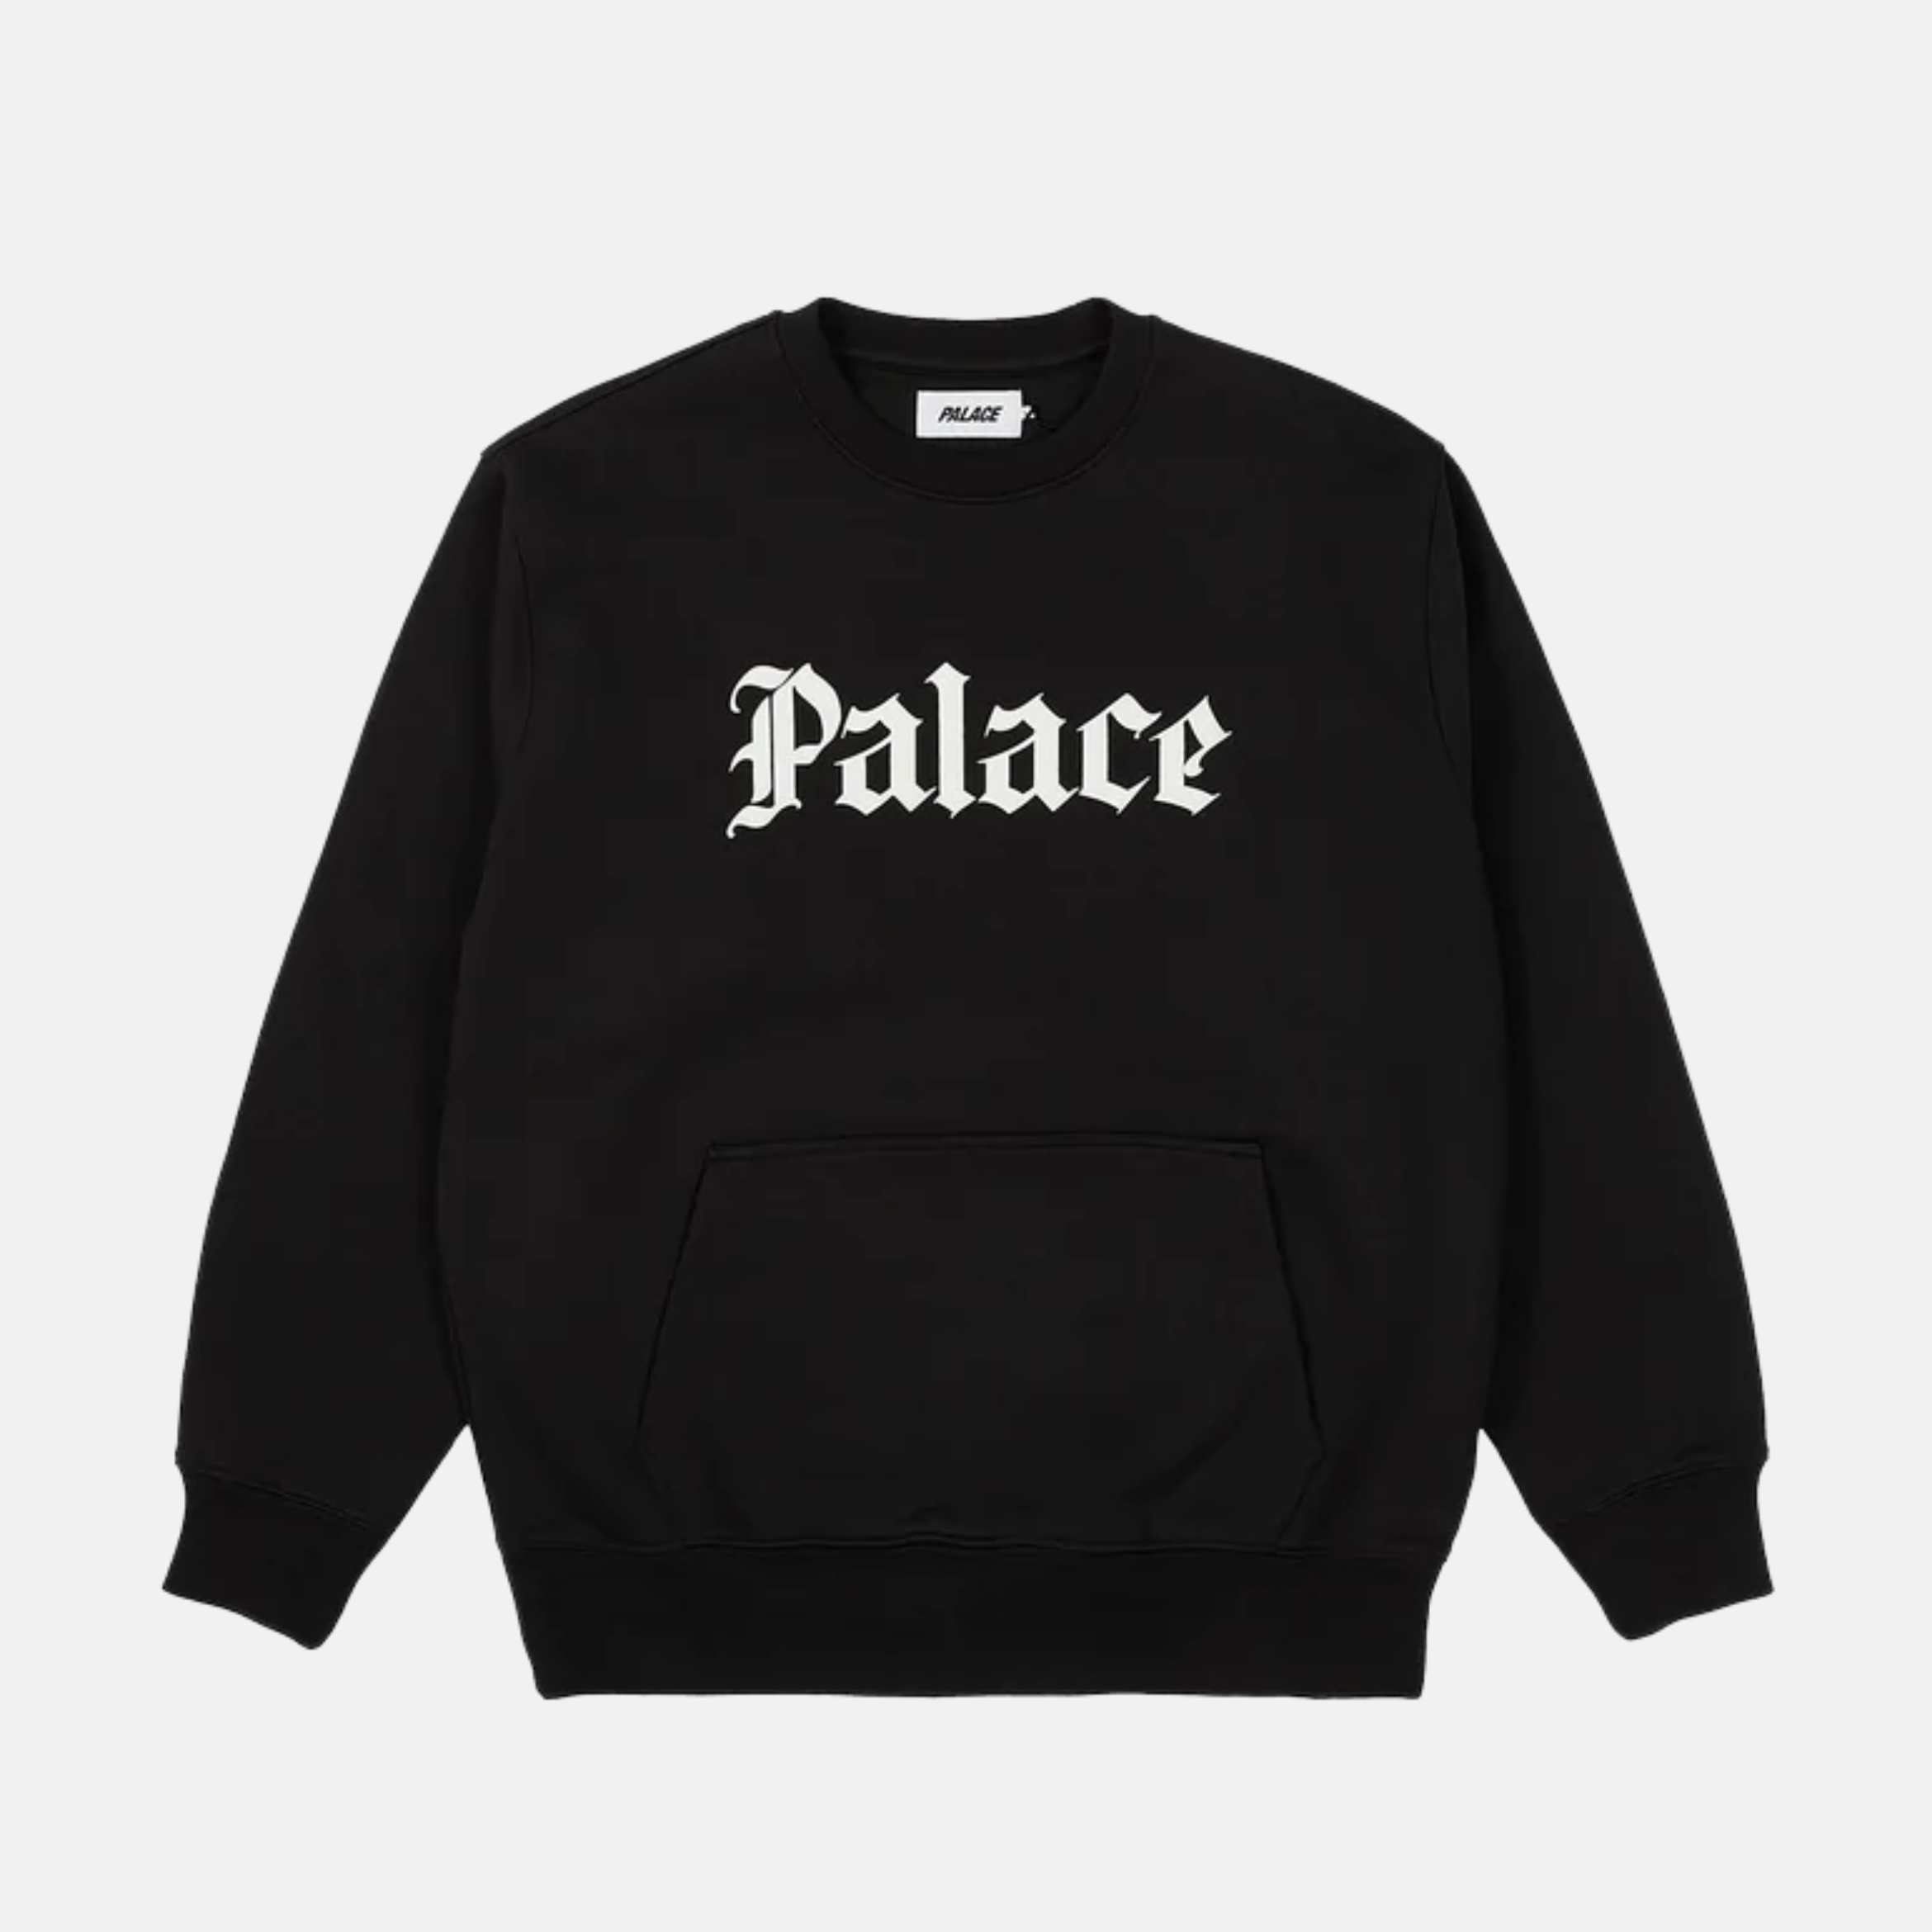 Palace sweater